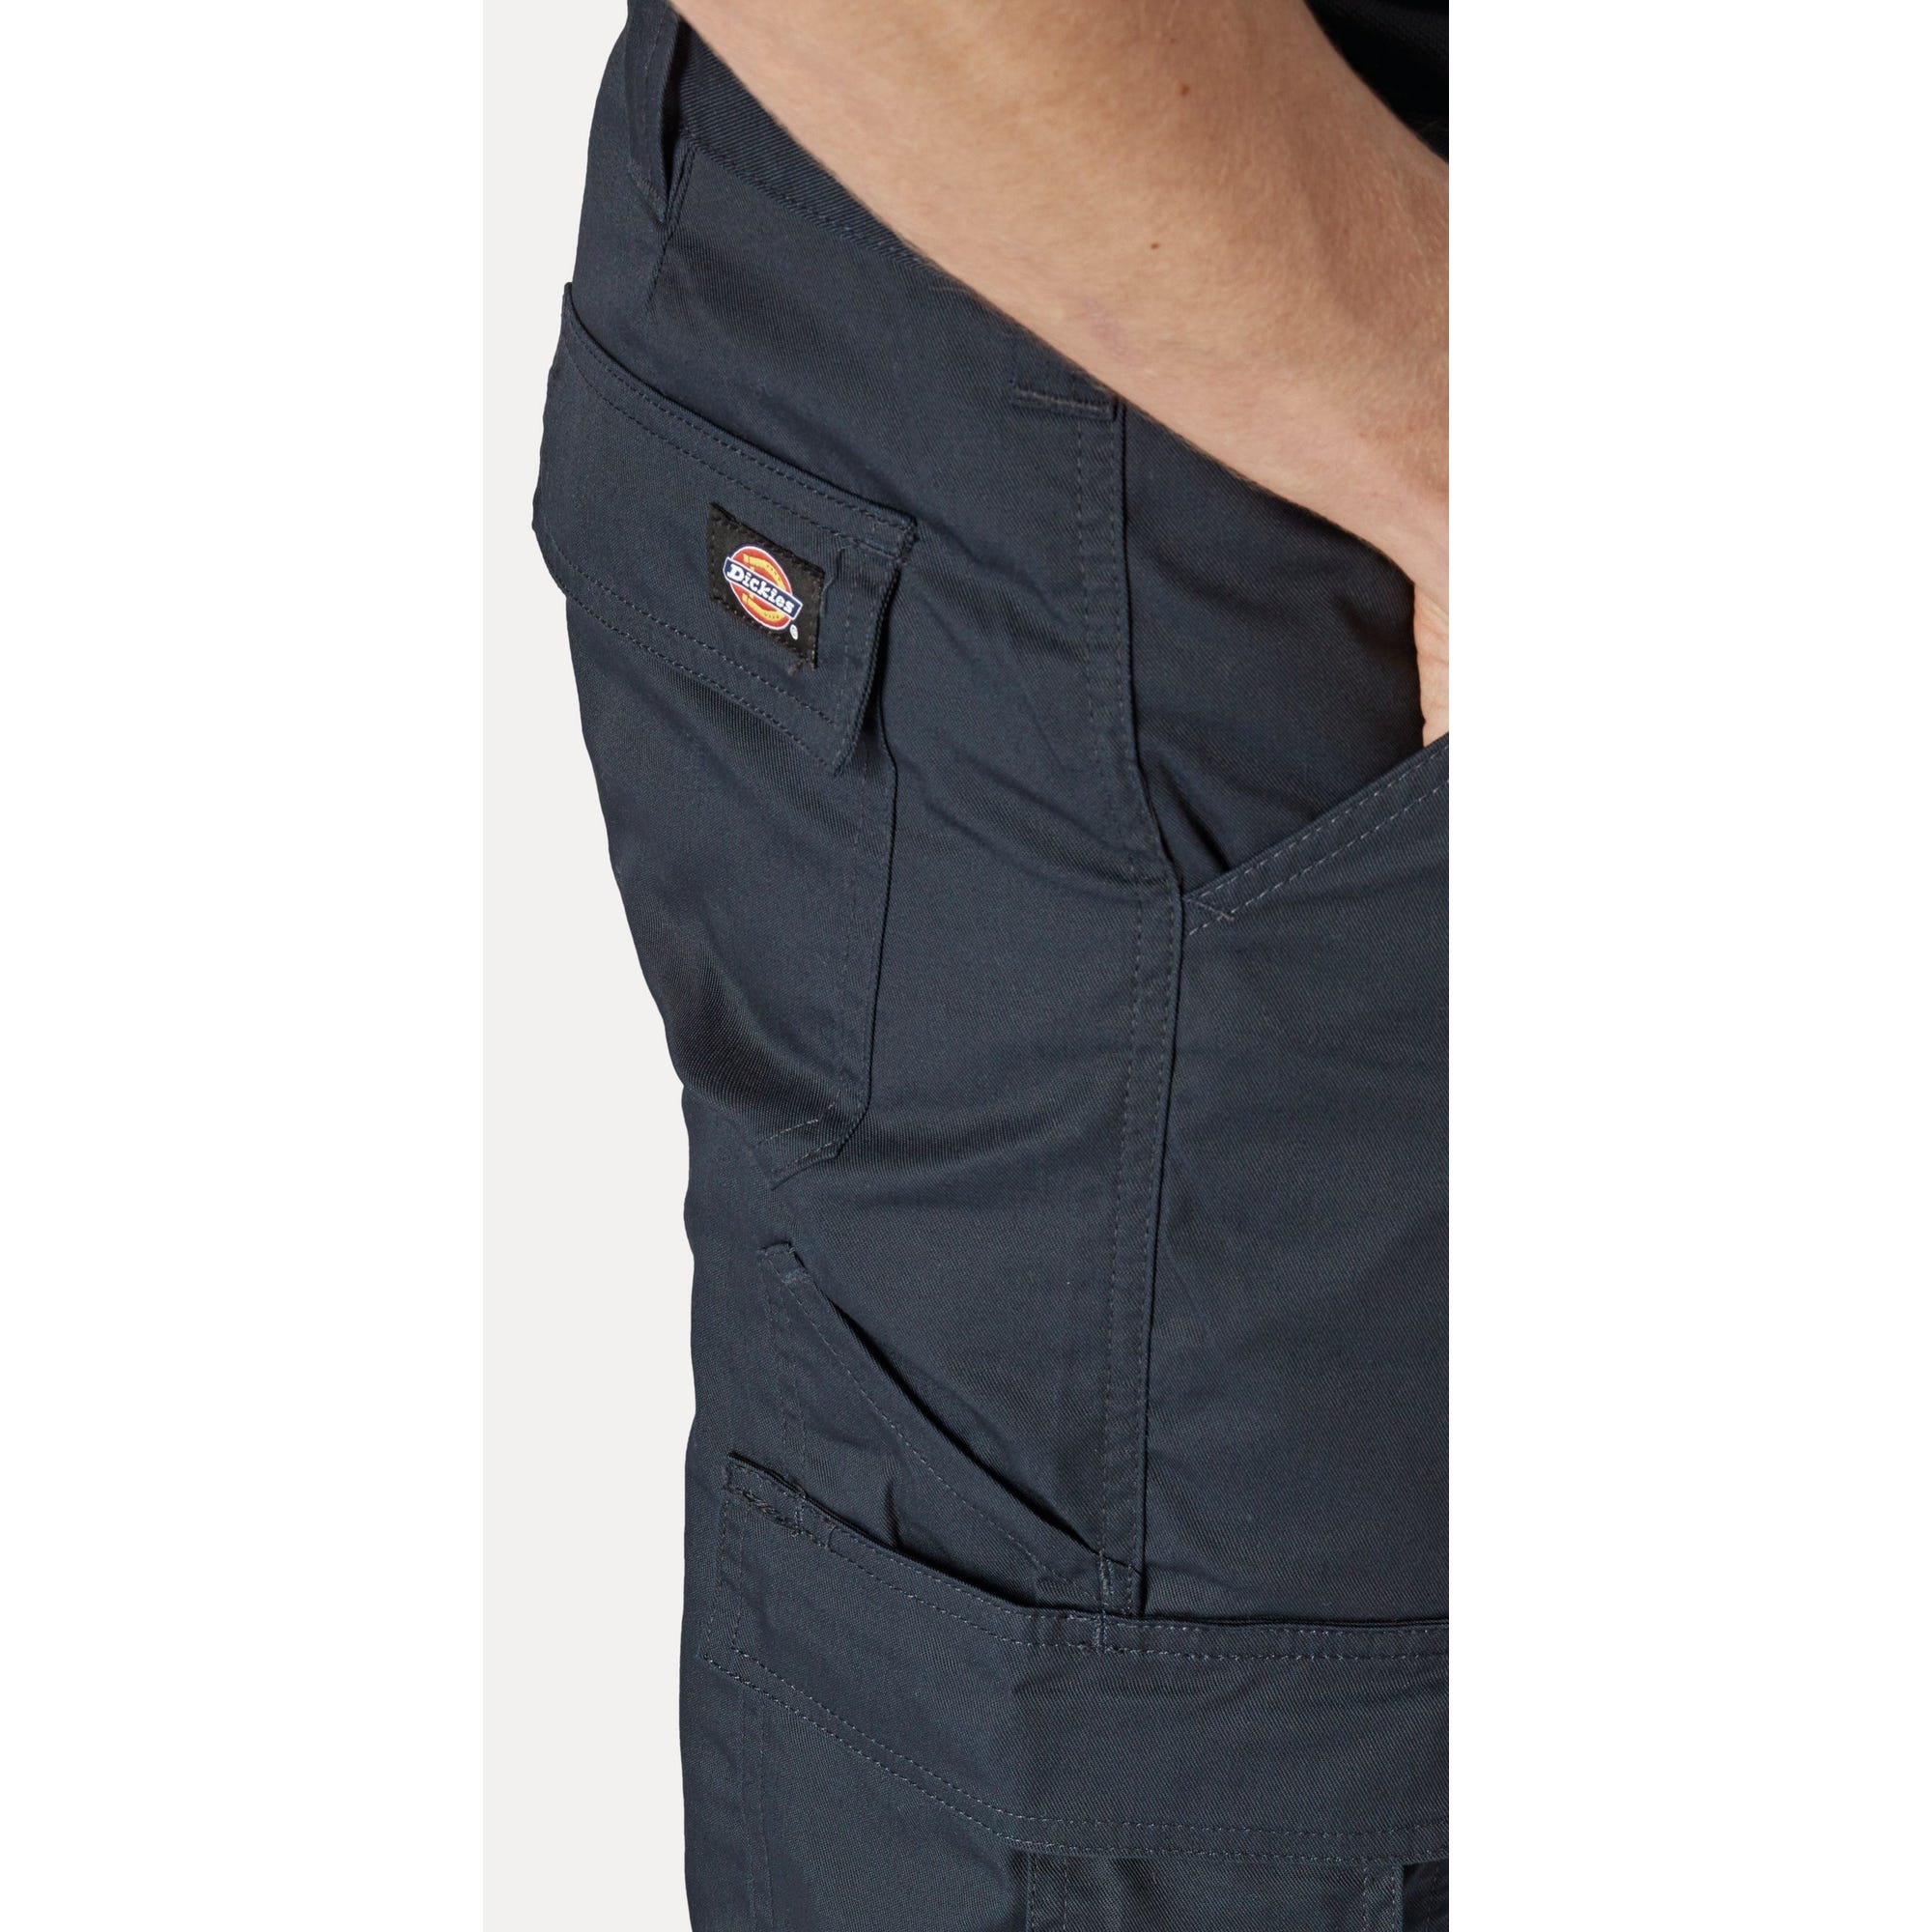 Pantalon Everyday Noir- Dickies - Taille 38 8